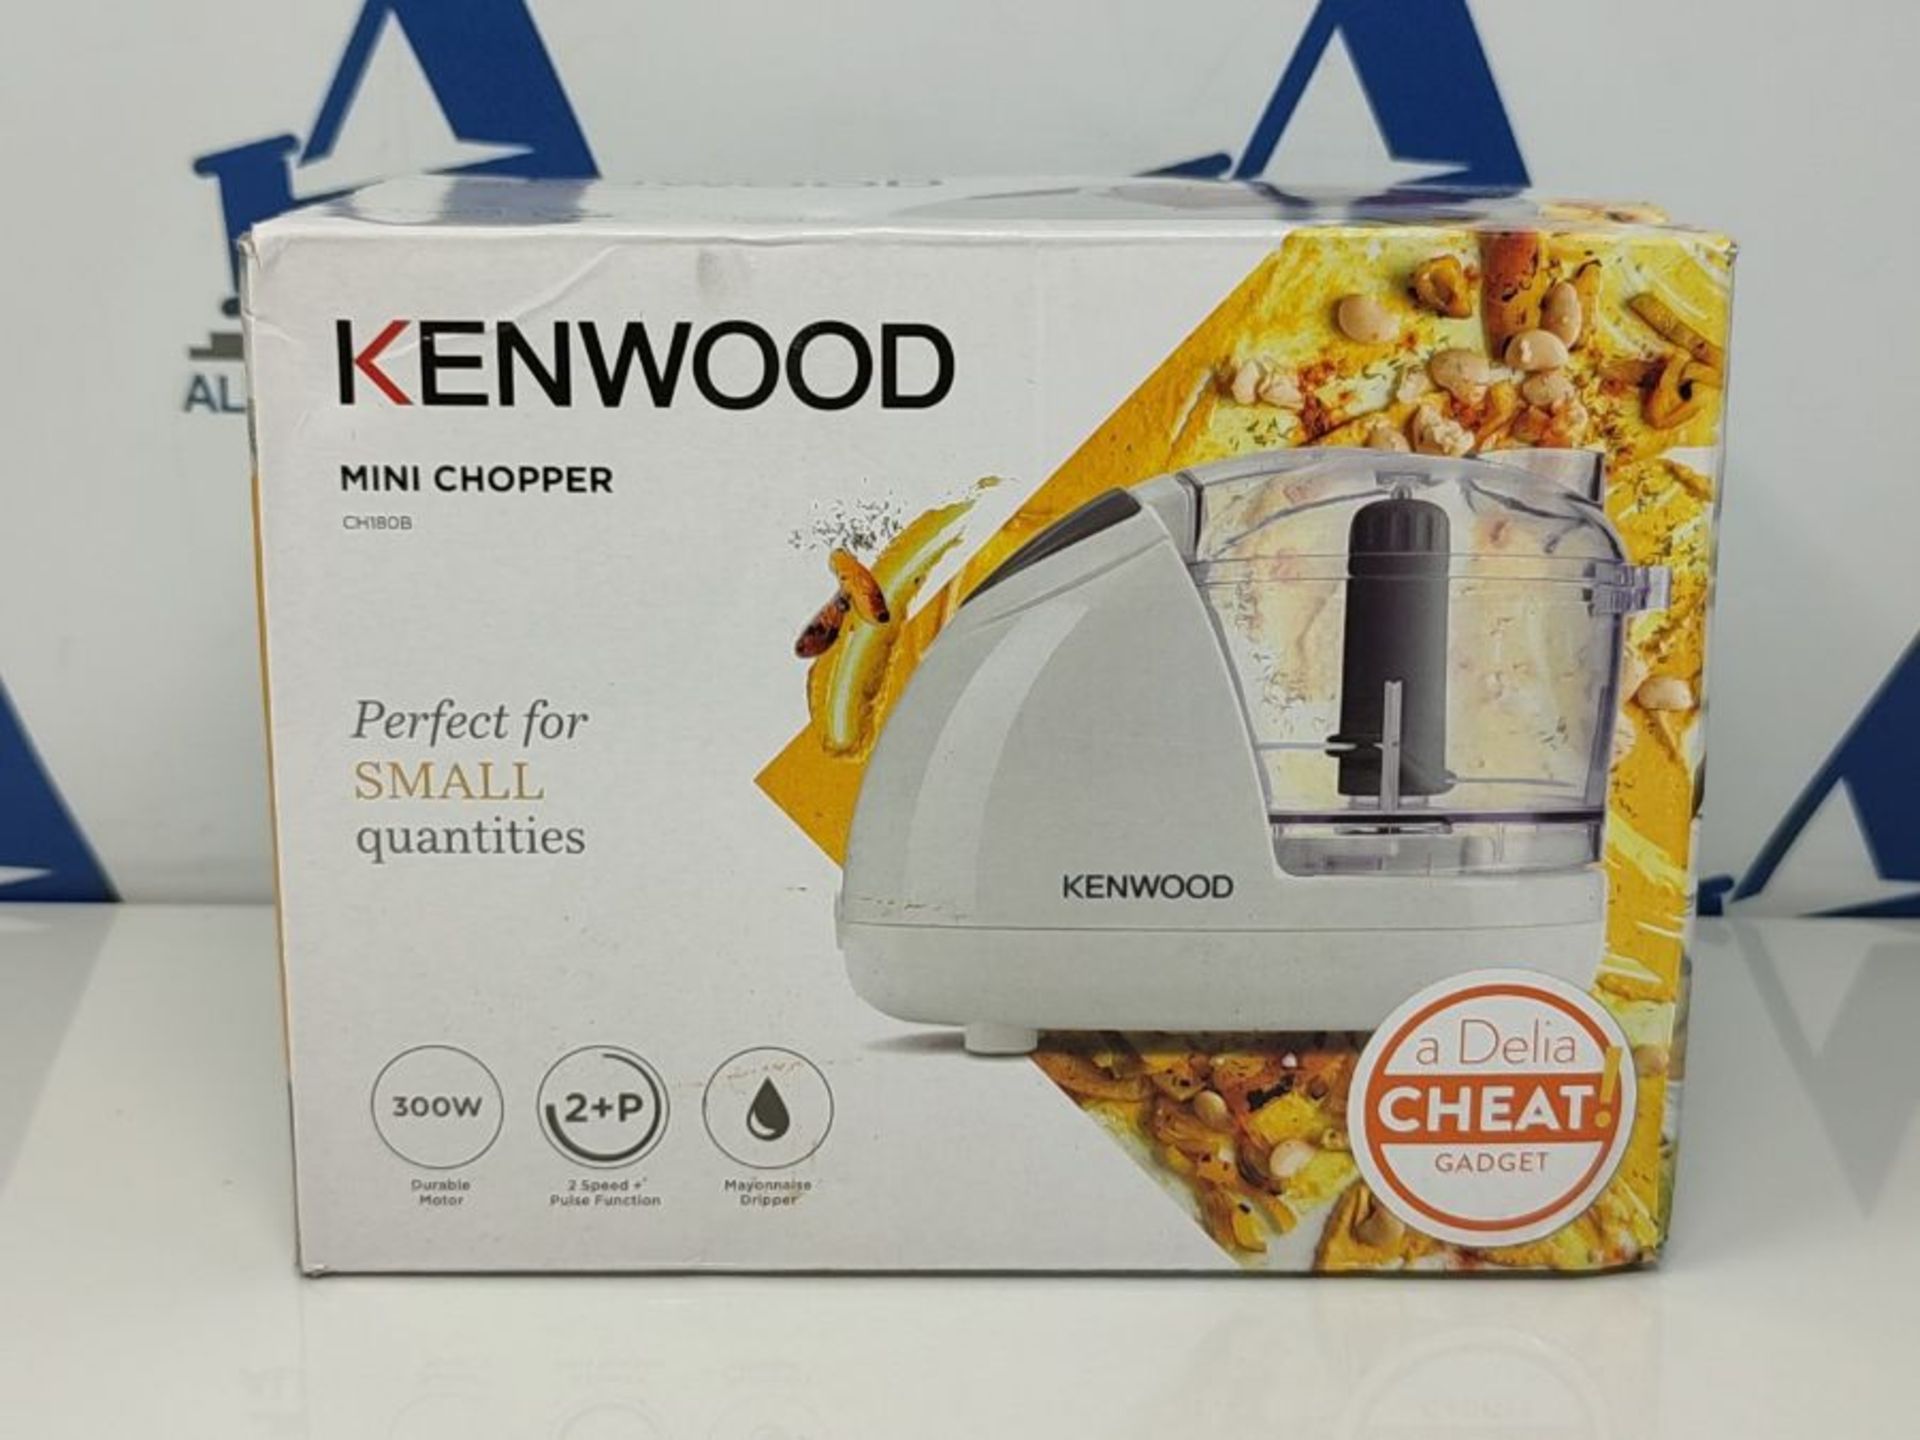 Kenwood Mini Chopper, 0.35 Litre Dishwasher Safe Bowl, 2 Speeds, Rubber Feet for Food - Image 2 of 3